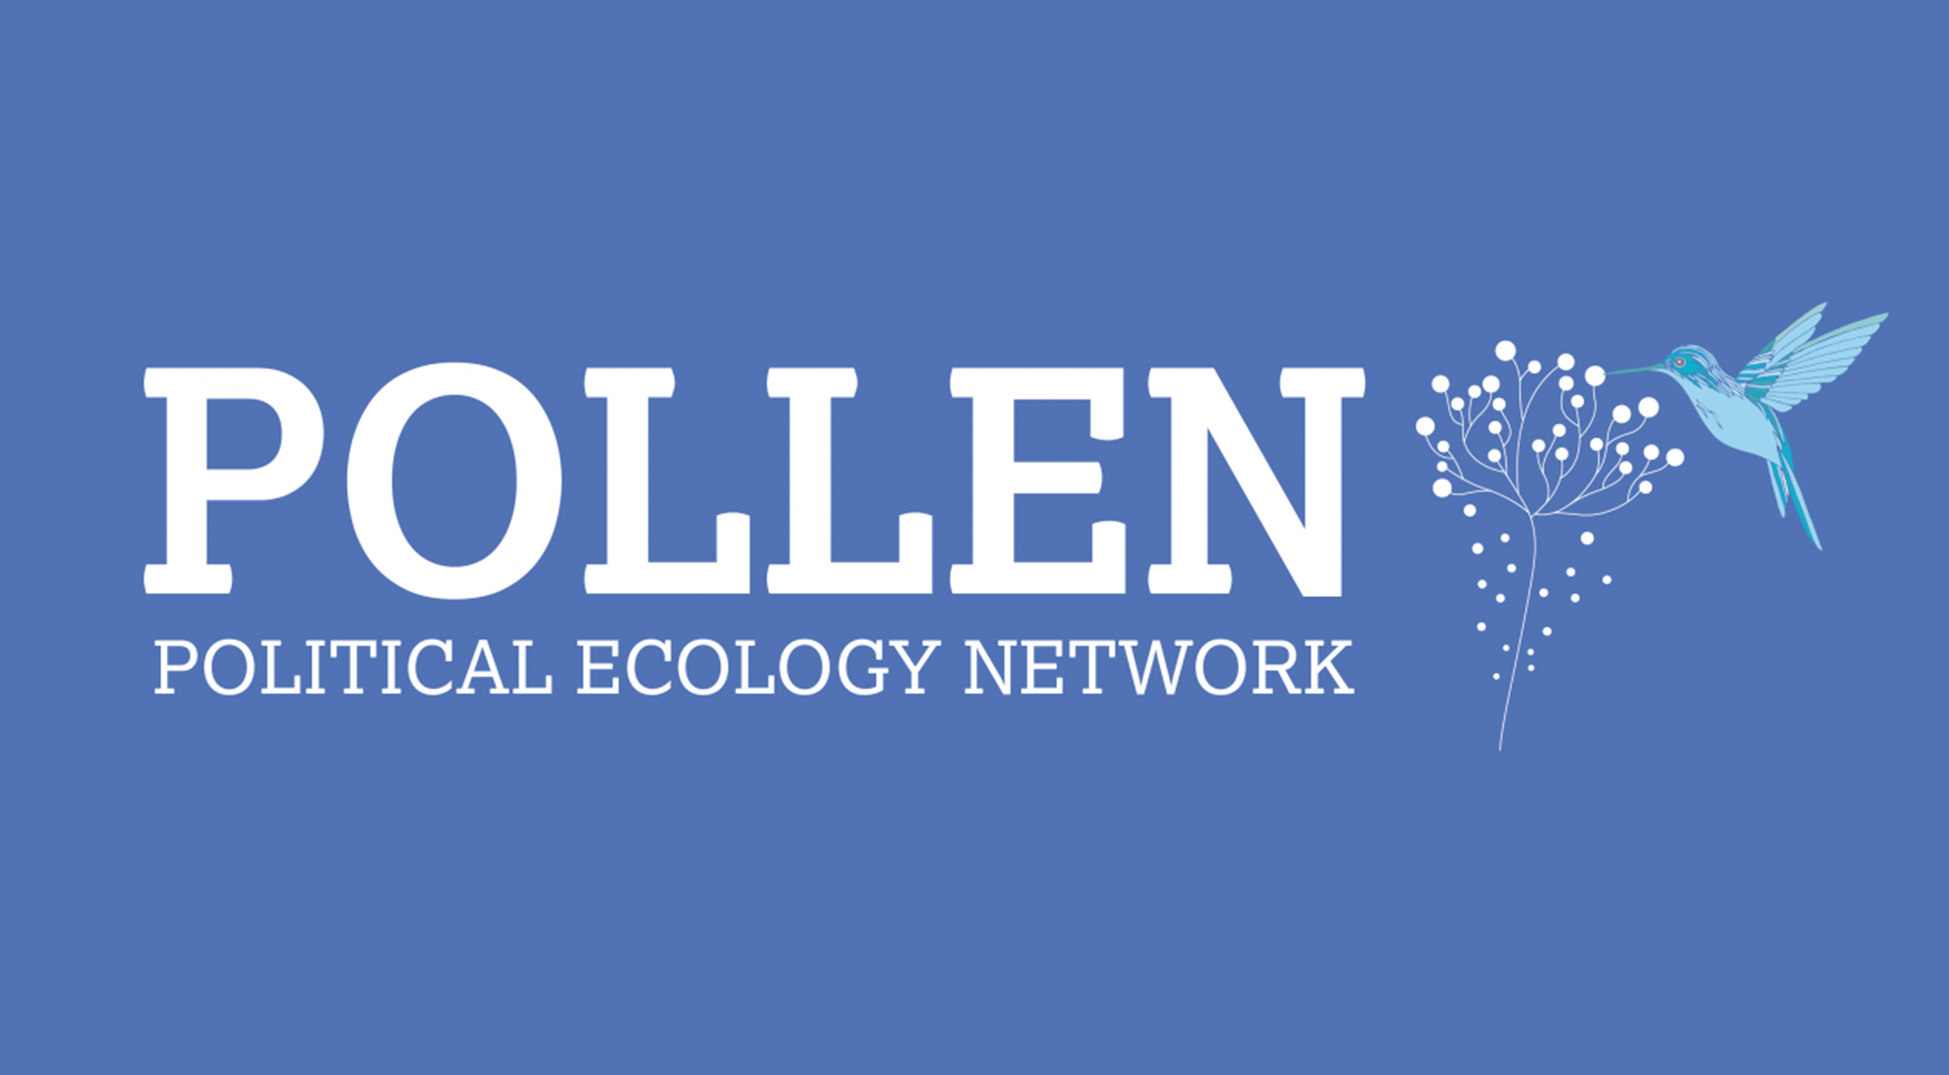 La Fundació ENT s’uneix a la xarxa internacional d’ecologia política POLLEN